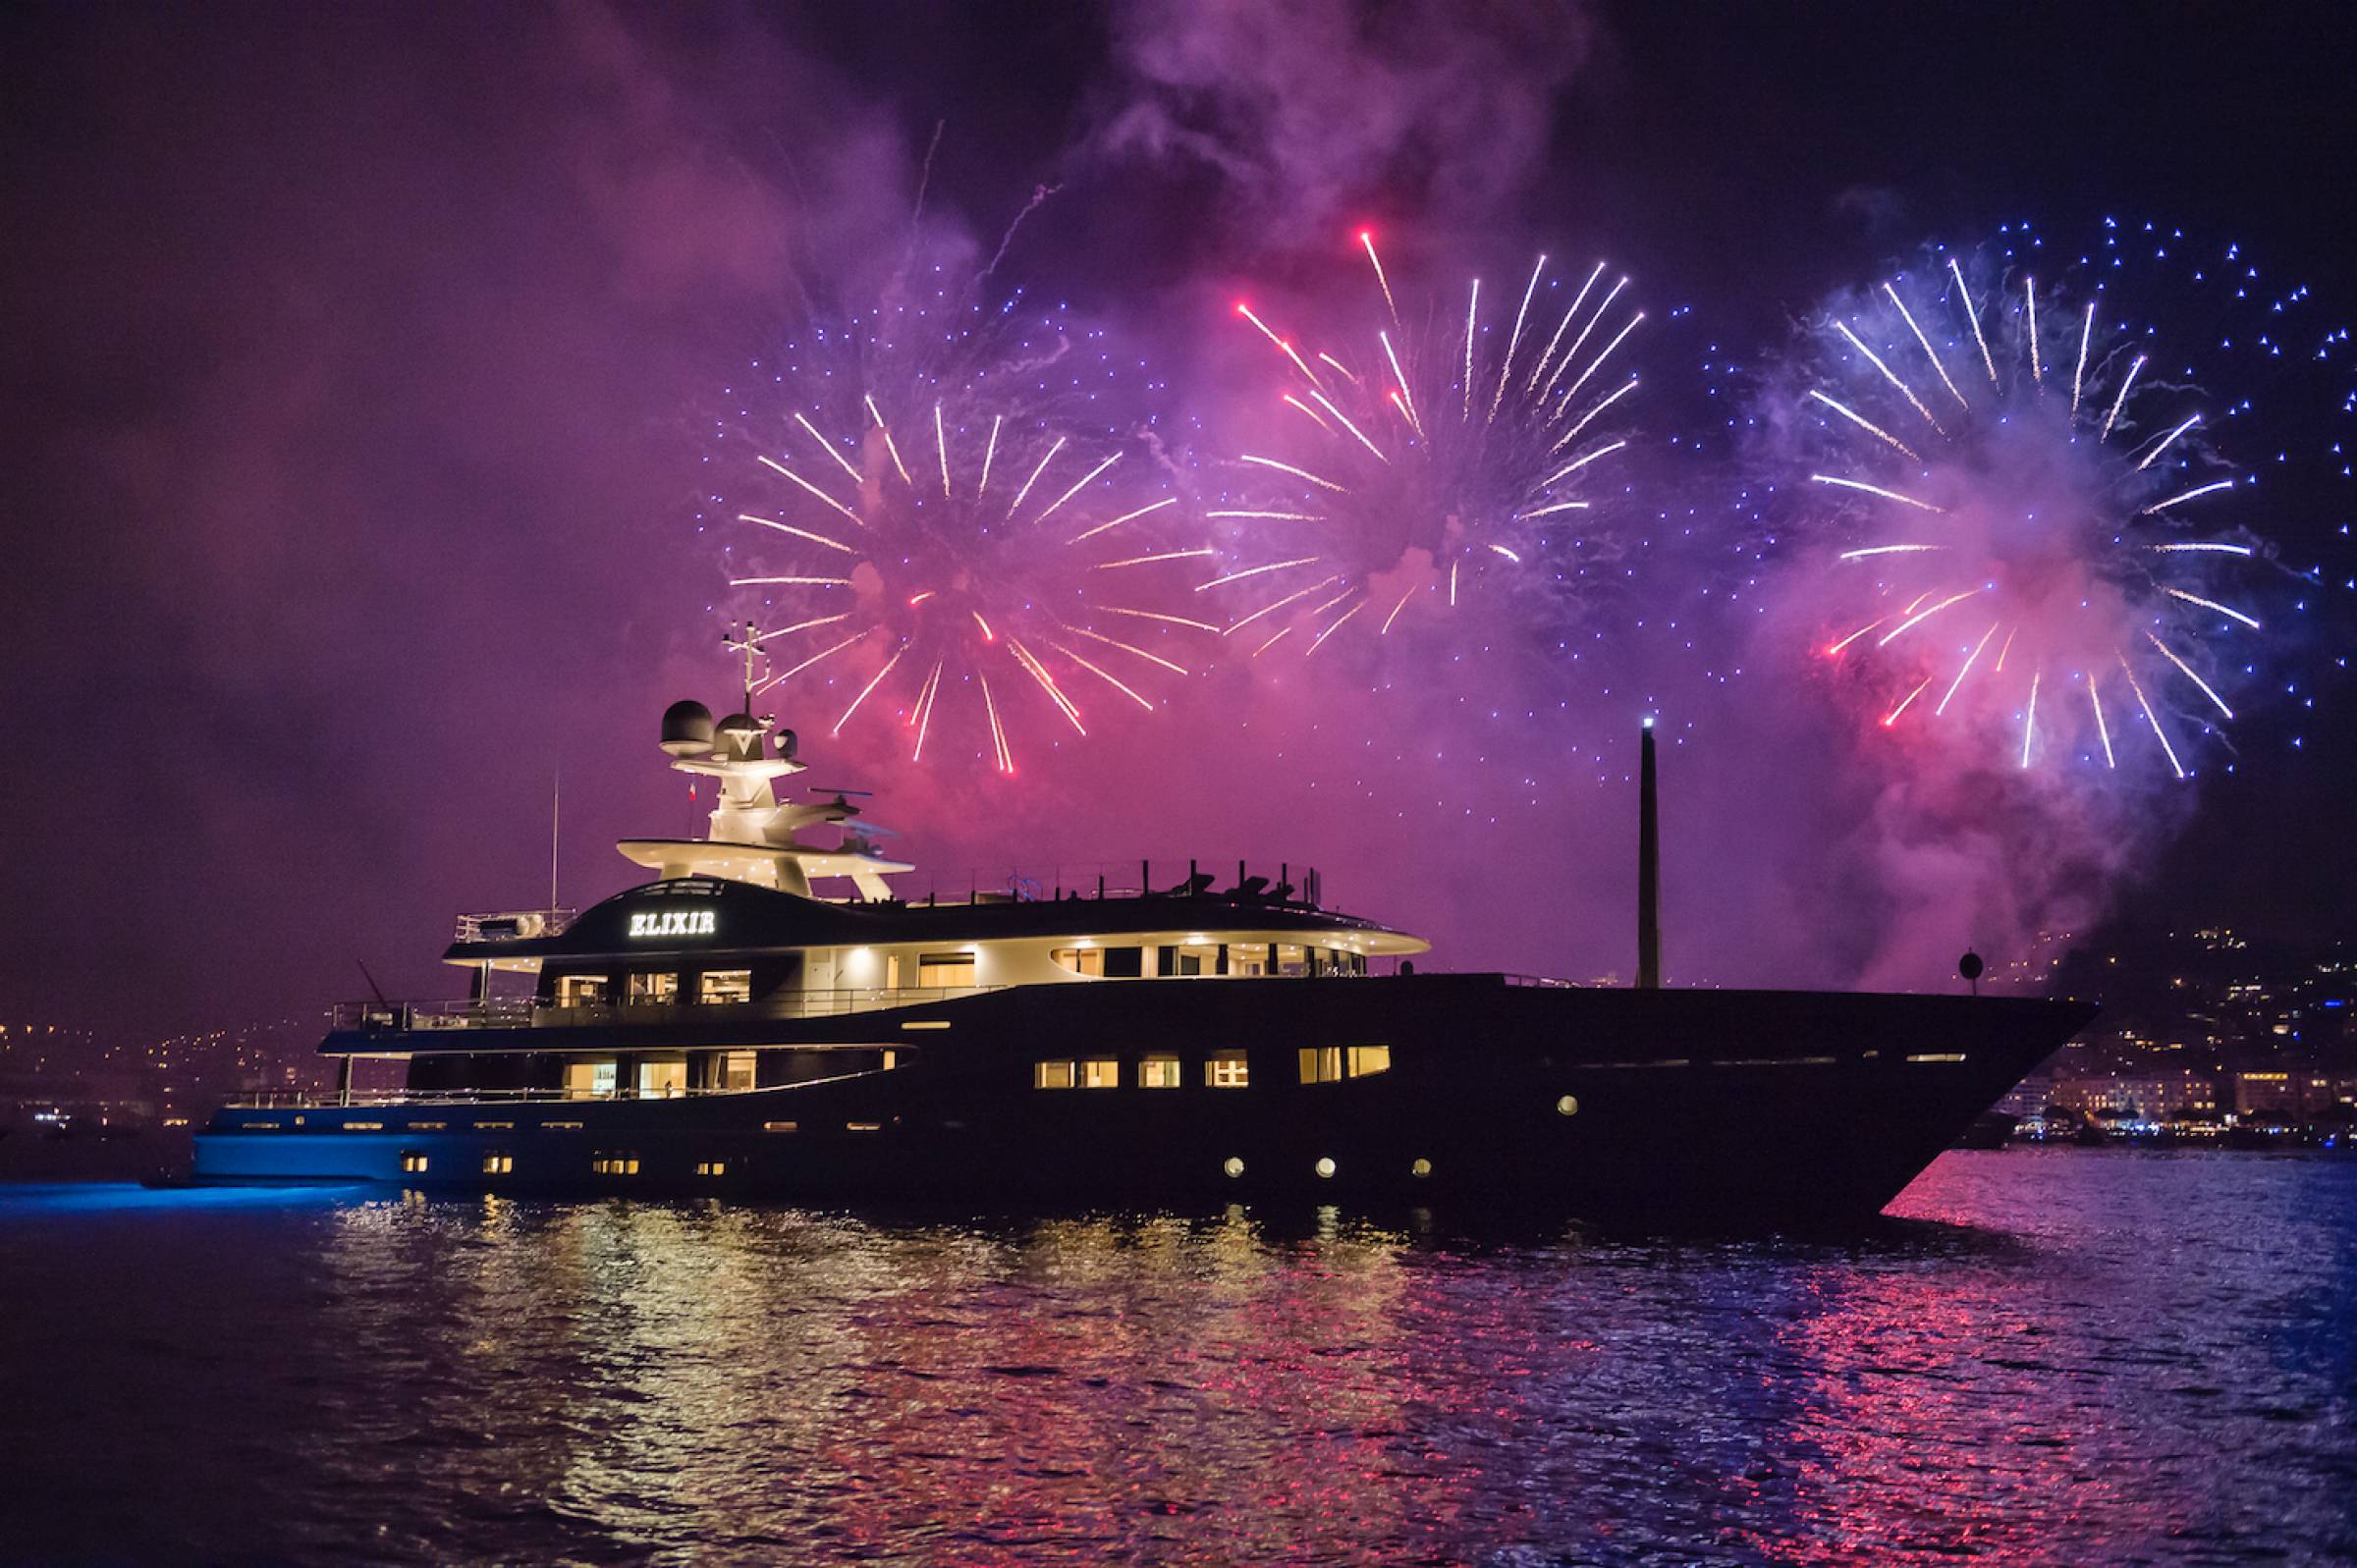 mega yacht dubai new year's eve